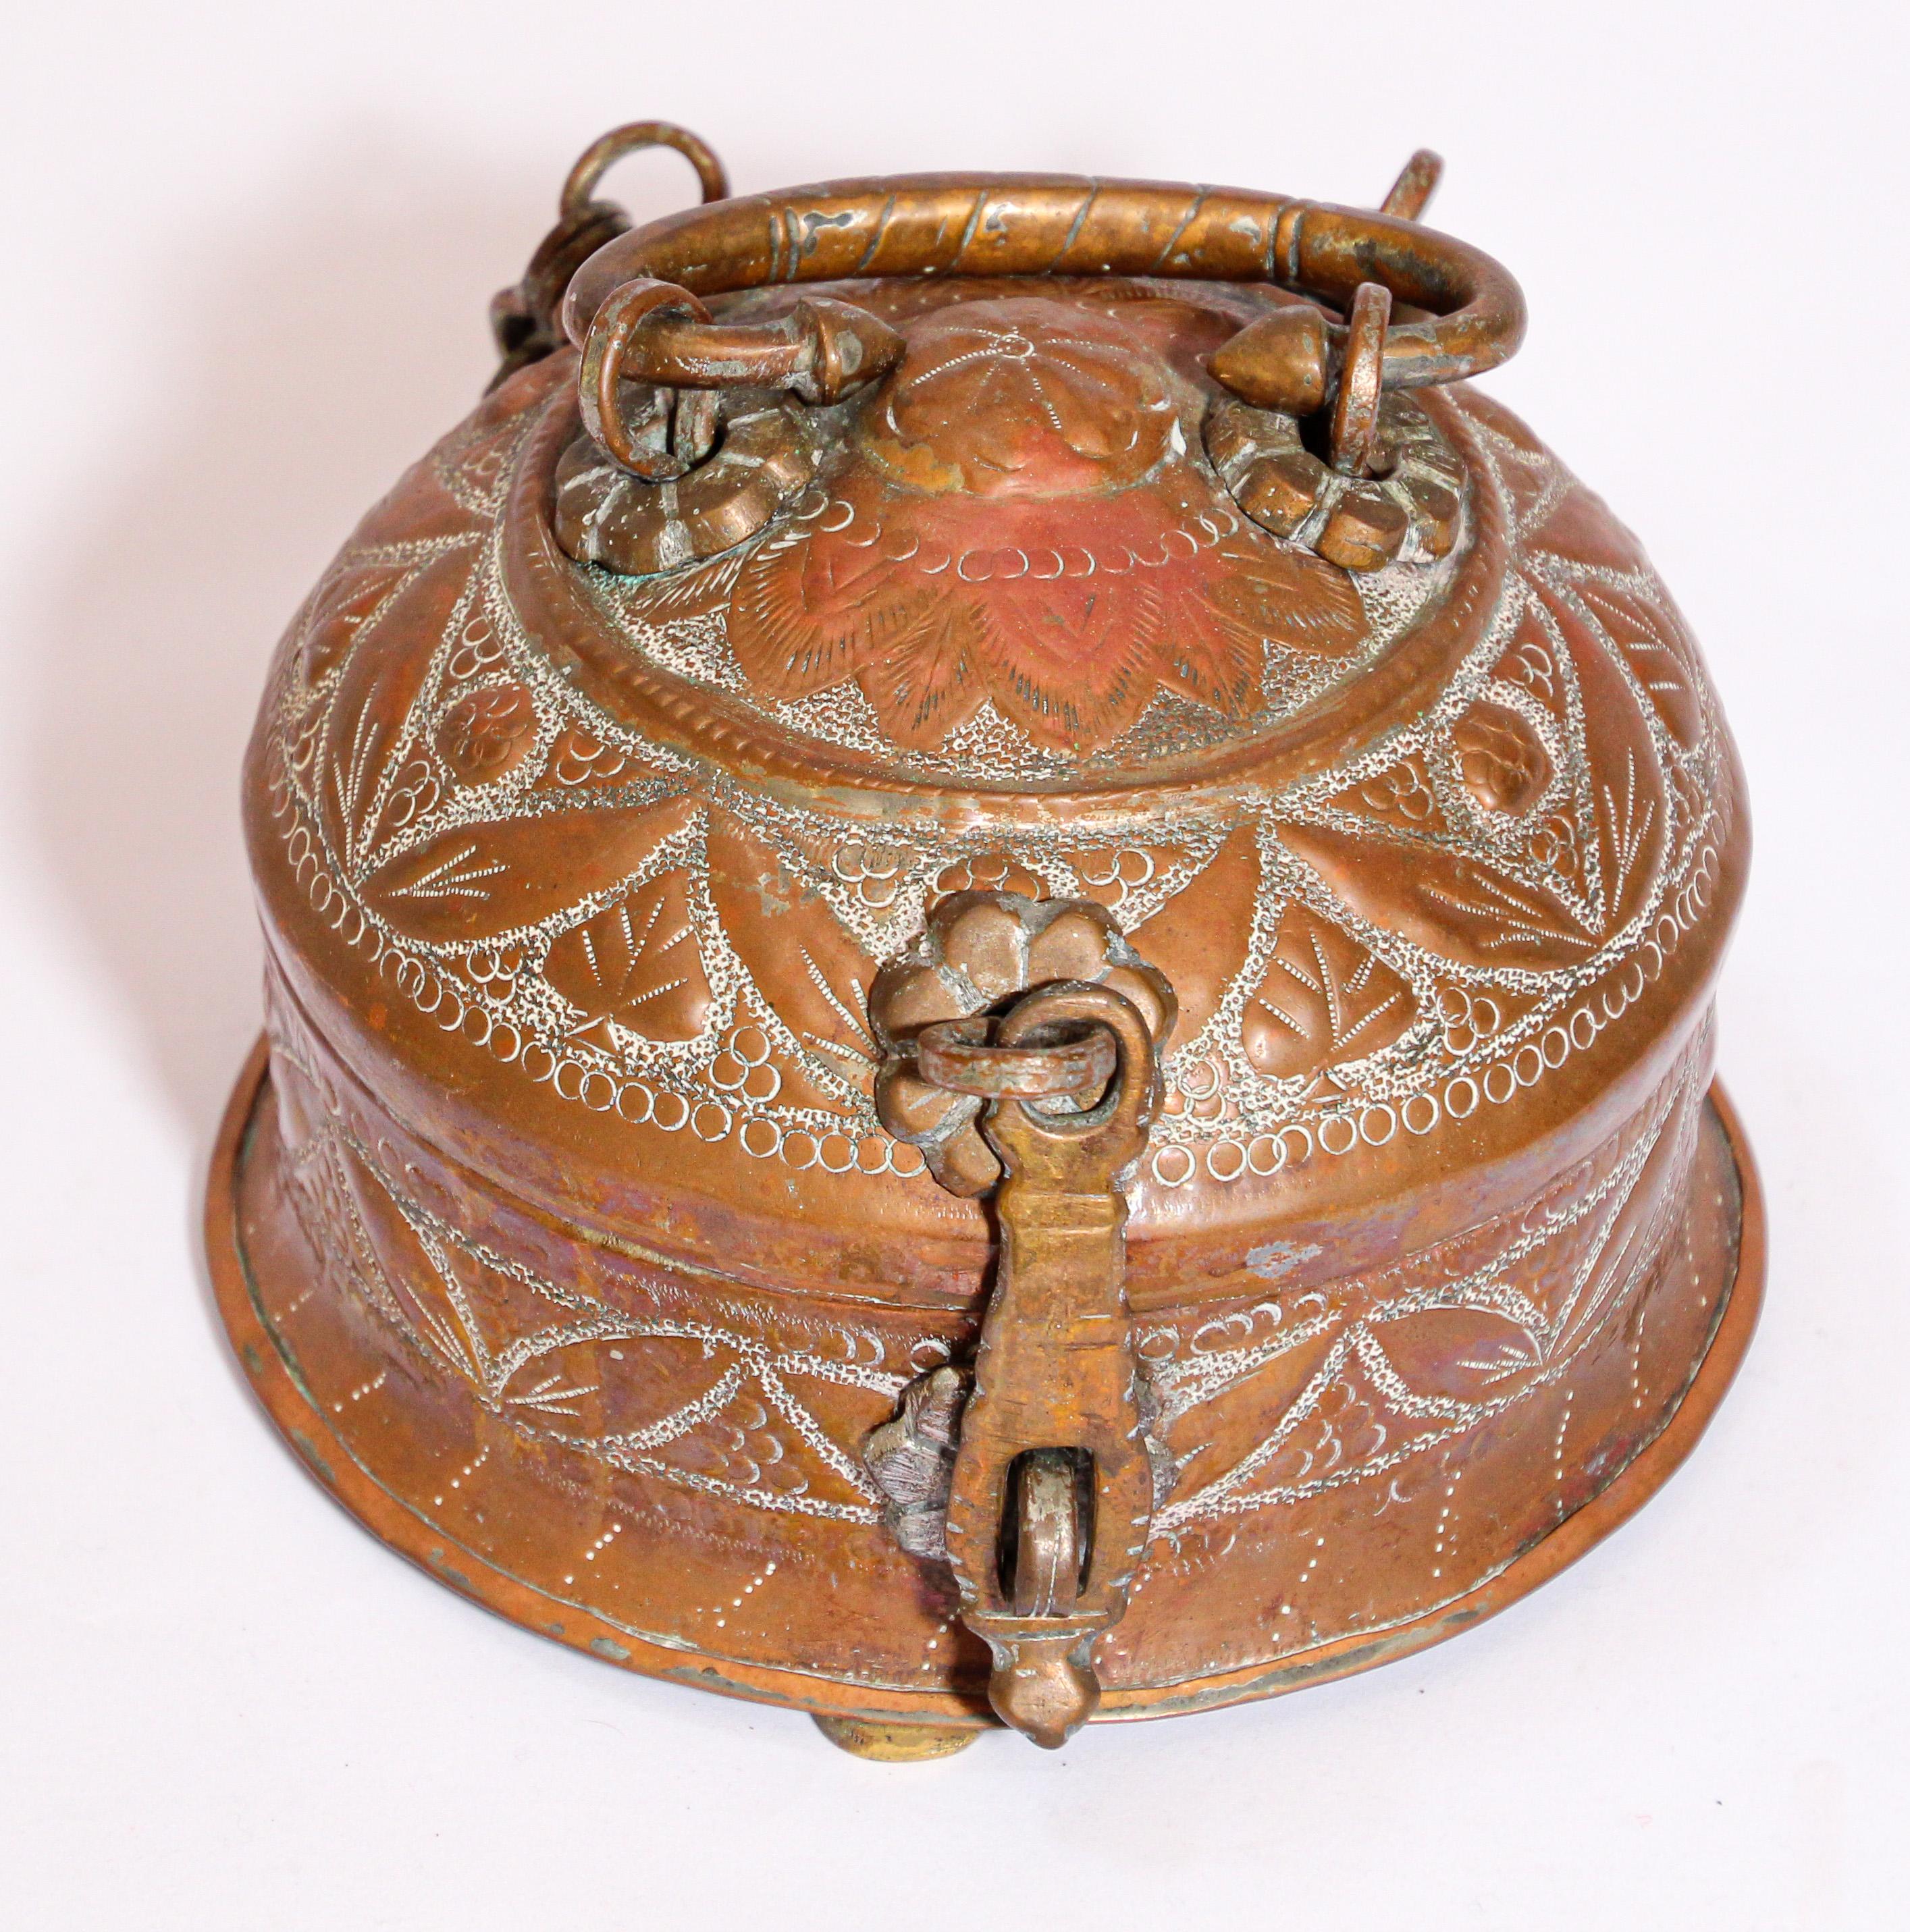 Boîte à bétel indienne décorative ronde en laiton, fabriquée à la main, avec couvercle, loquet et poignée supérieure.
Délicatement et minutieusement ciselé à la main avec des motifs géométriques.
Utilisé comme porte-théière avec des boîtes à thé, un